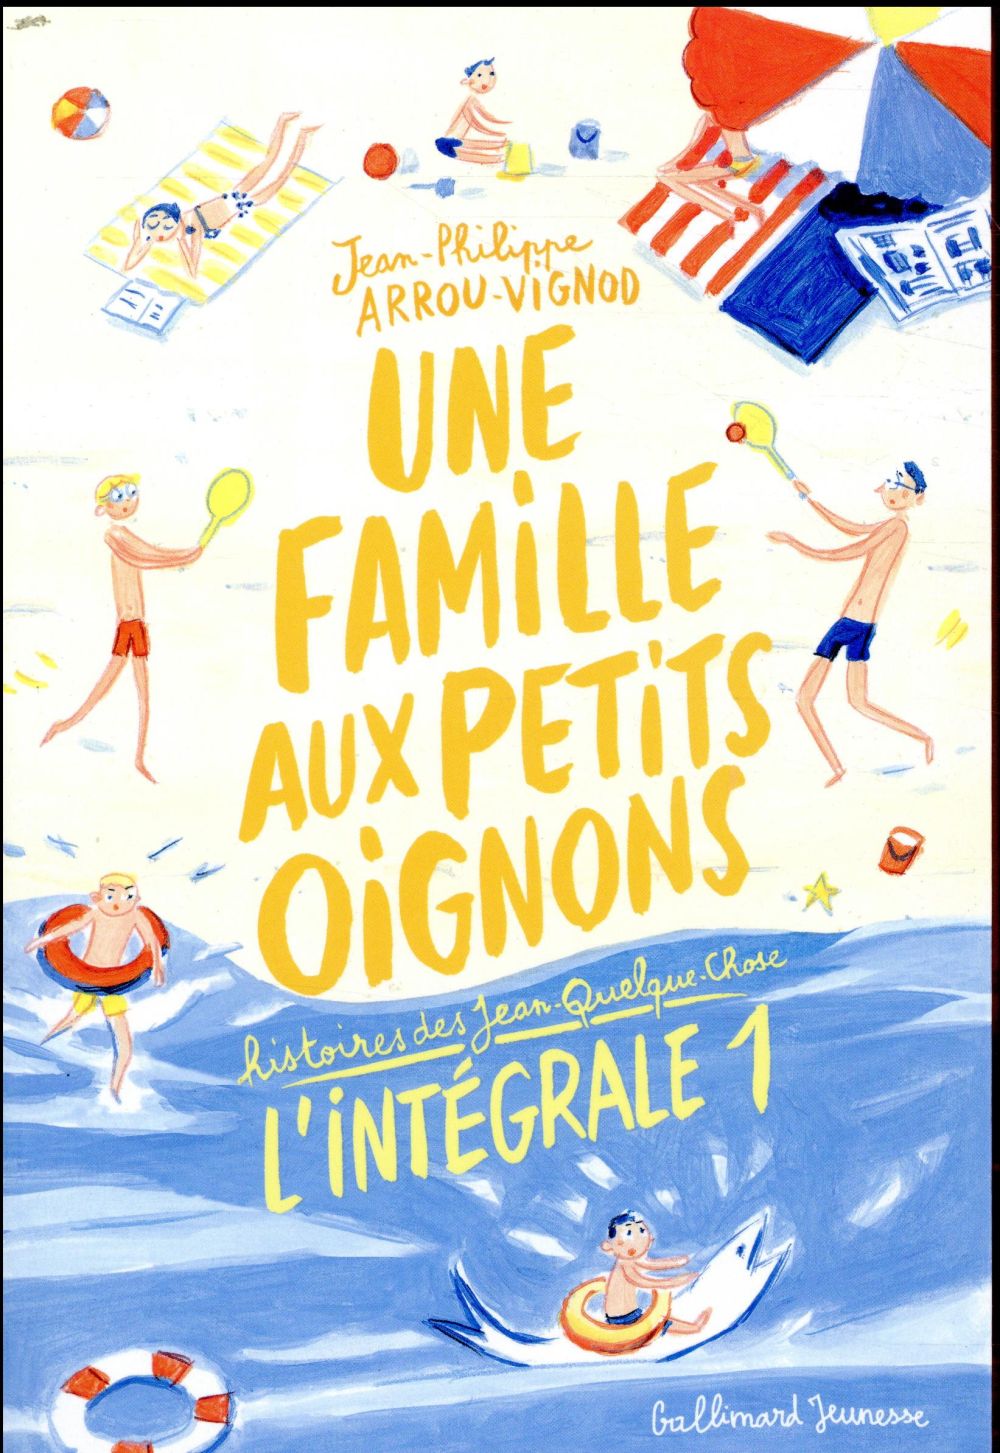 couverture du livre UNE FAMILLE AUX PETITS OIGNONS - HISTOIRES DES JEAN-QUELQUE-CHOSE